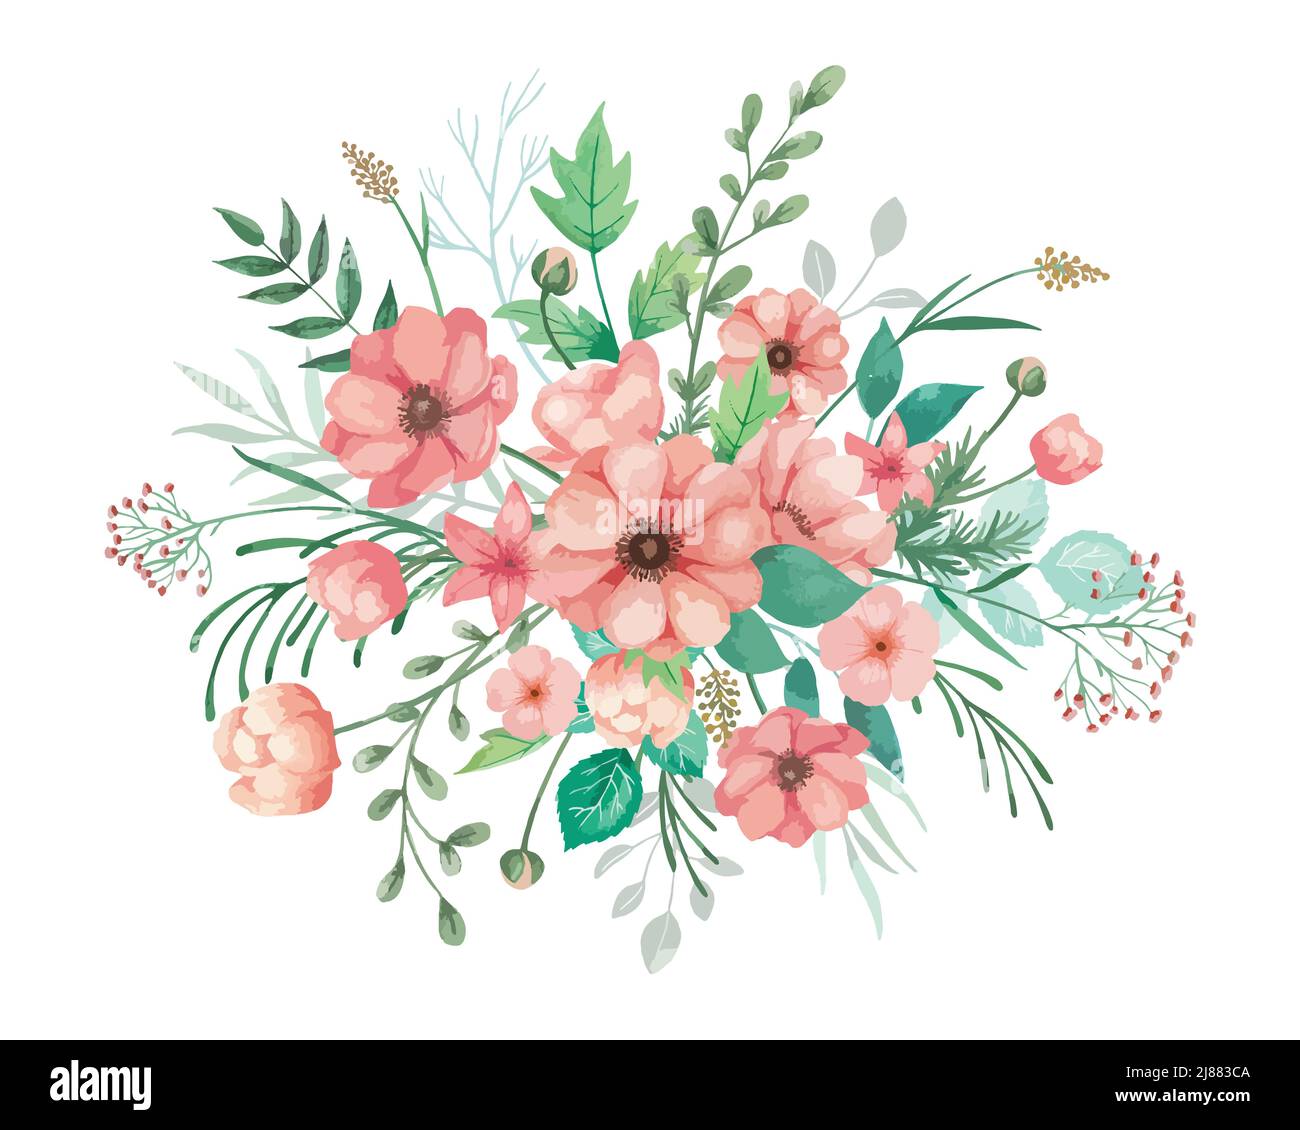 Aquarell-Blüten illlustriert für Hochzeitseinladung mit korallenen Anemonen, Knospen und grünen Blättern. Blumenarrangement mit weißem Hintergrund. Stock Vektor